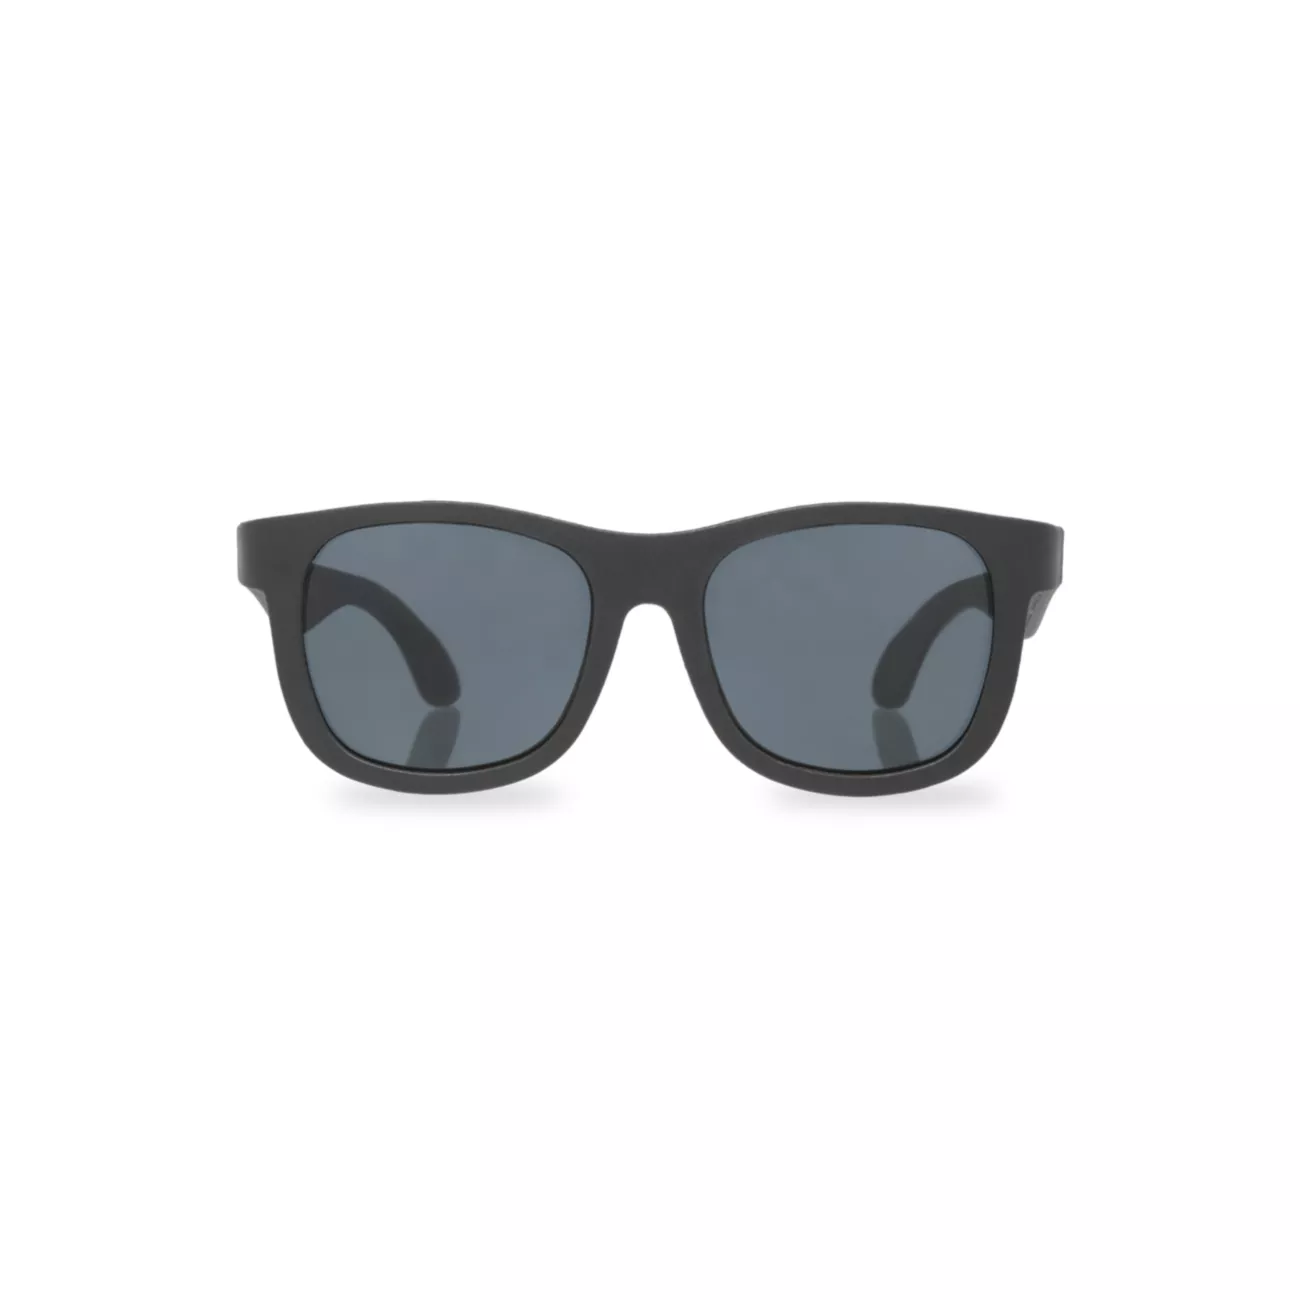 Оригинальные солнцезащитные очки Navigator Babiators